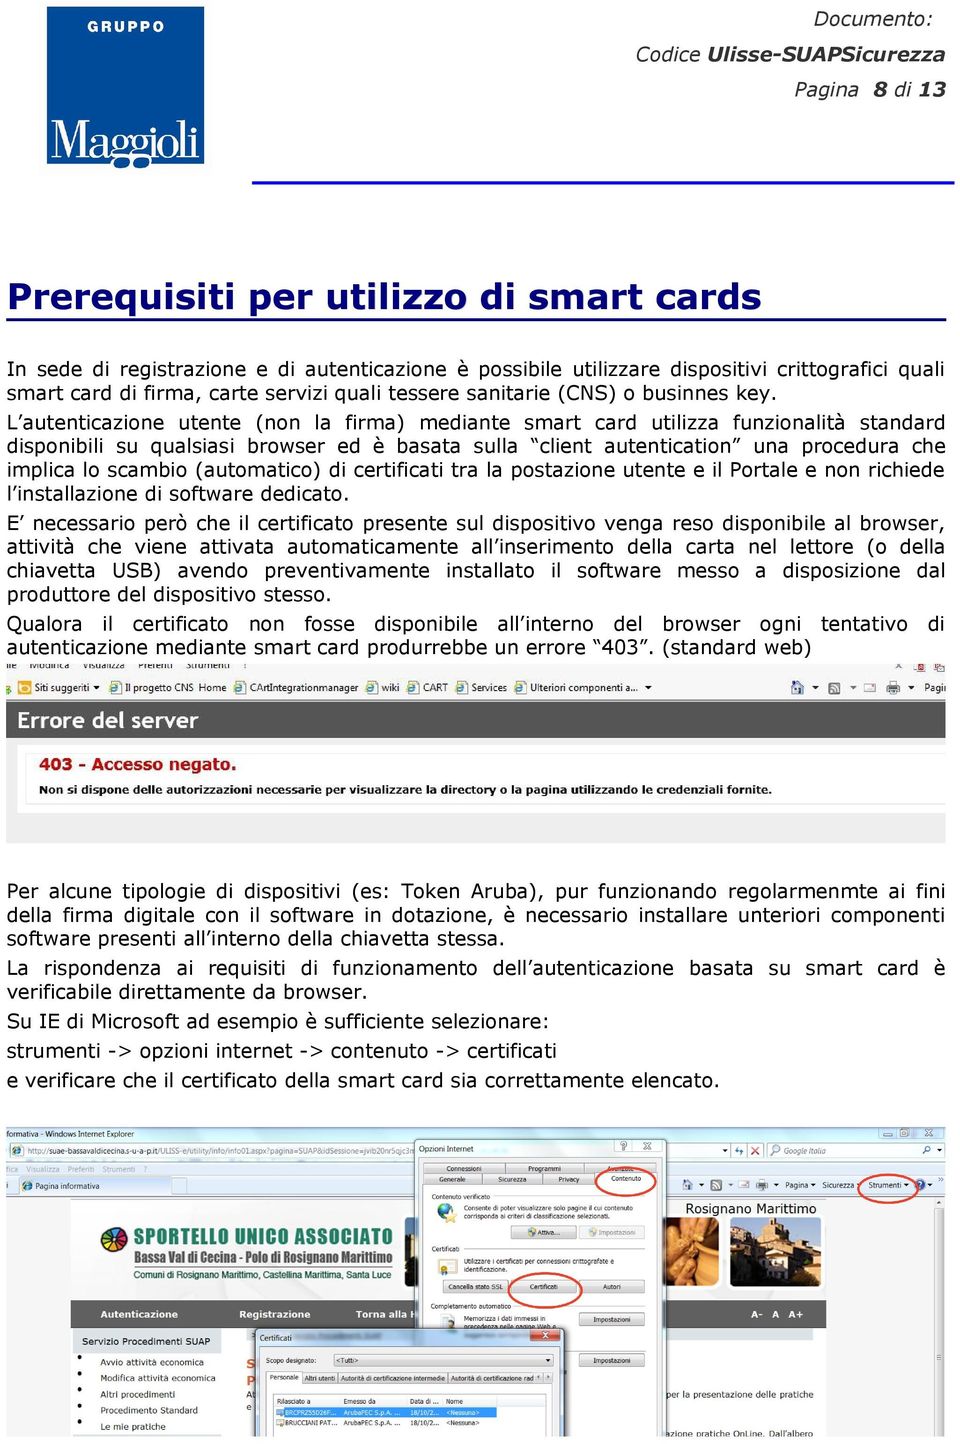 L autenticazione utente (non la firma) mediante smart card utilizza funzionalità standard disponibili su qualsiasi browser ed è basata sulla client autentication una procedura che implica lo scambio